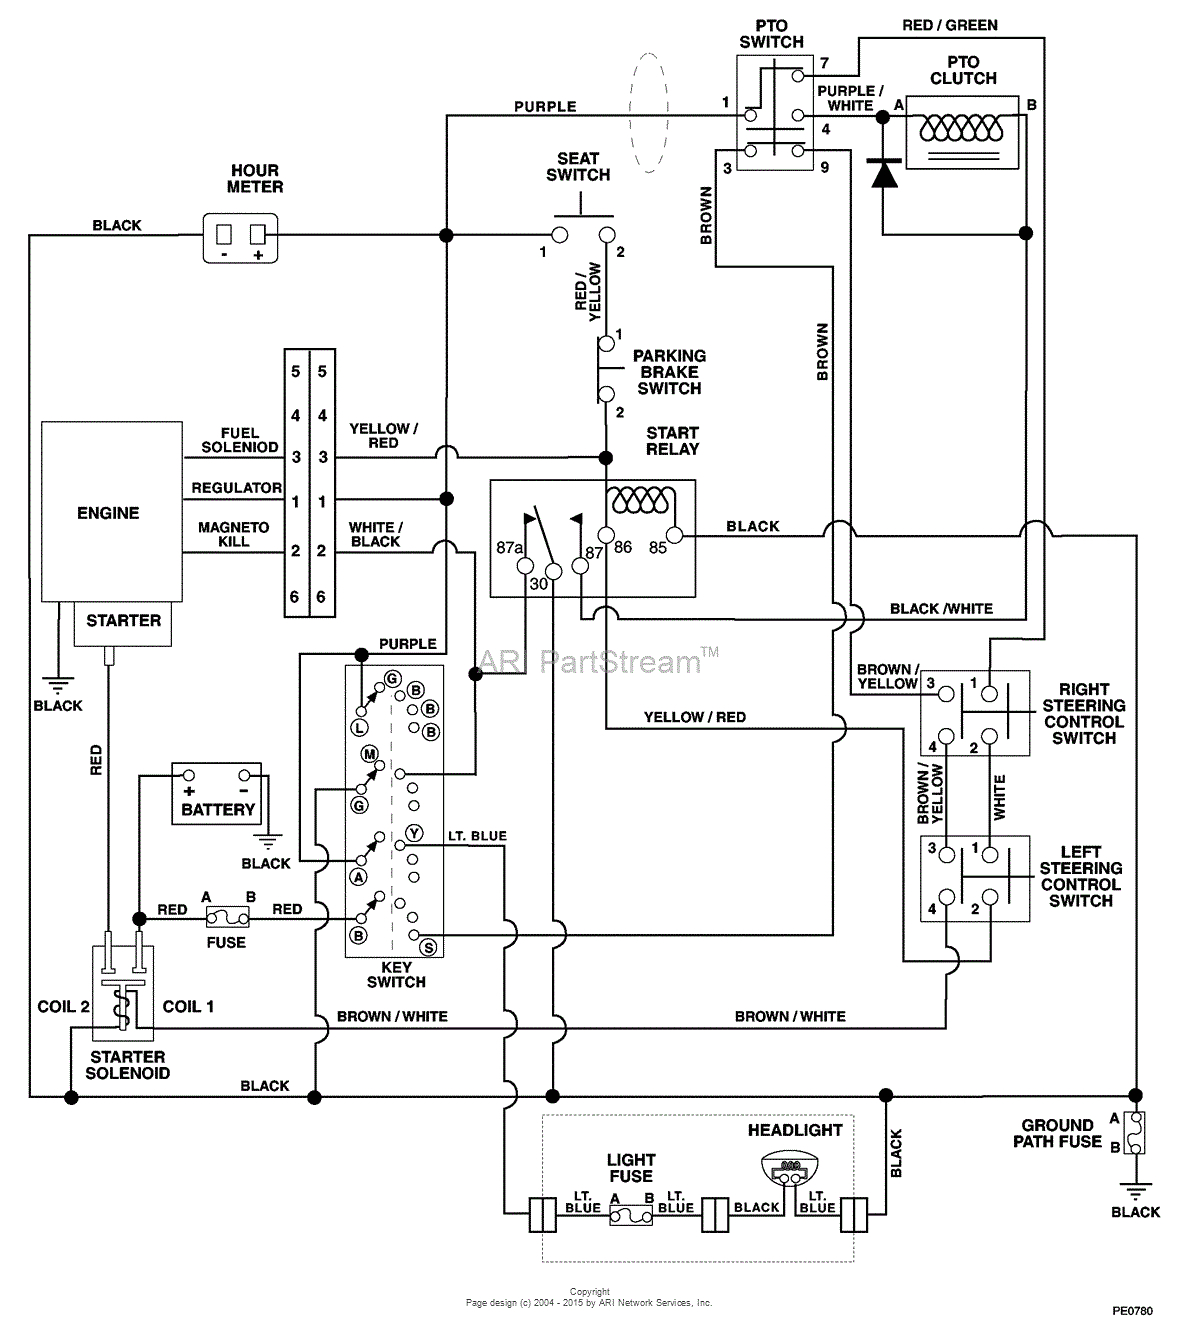 ampeg svt wiring diagram wiring library kohler k241 starter generator wiring diagram schematics wiring rh ssl